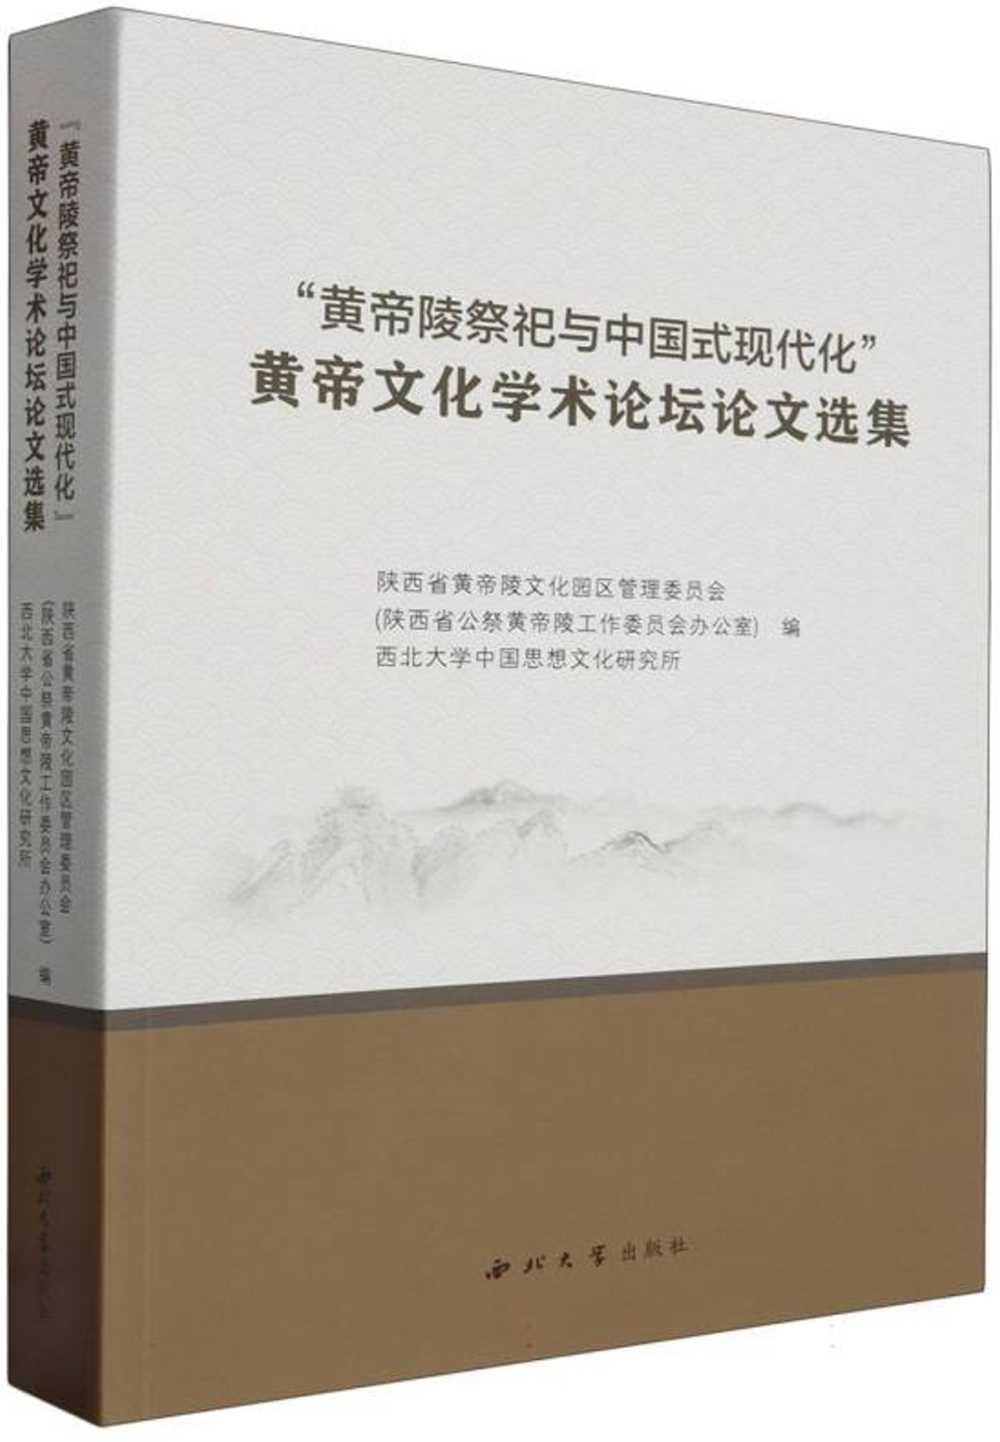 “黃帝陵祭祀與中國式現代化”黃帝文化學術論壇論文選集